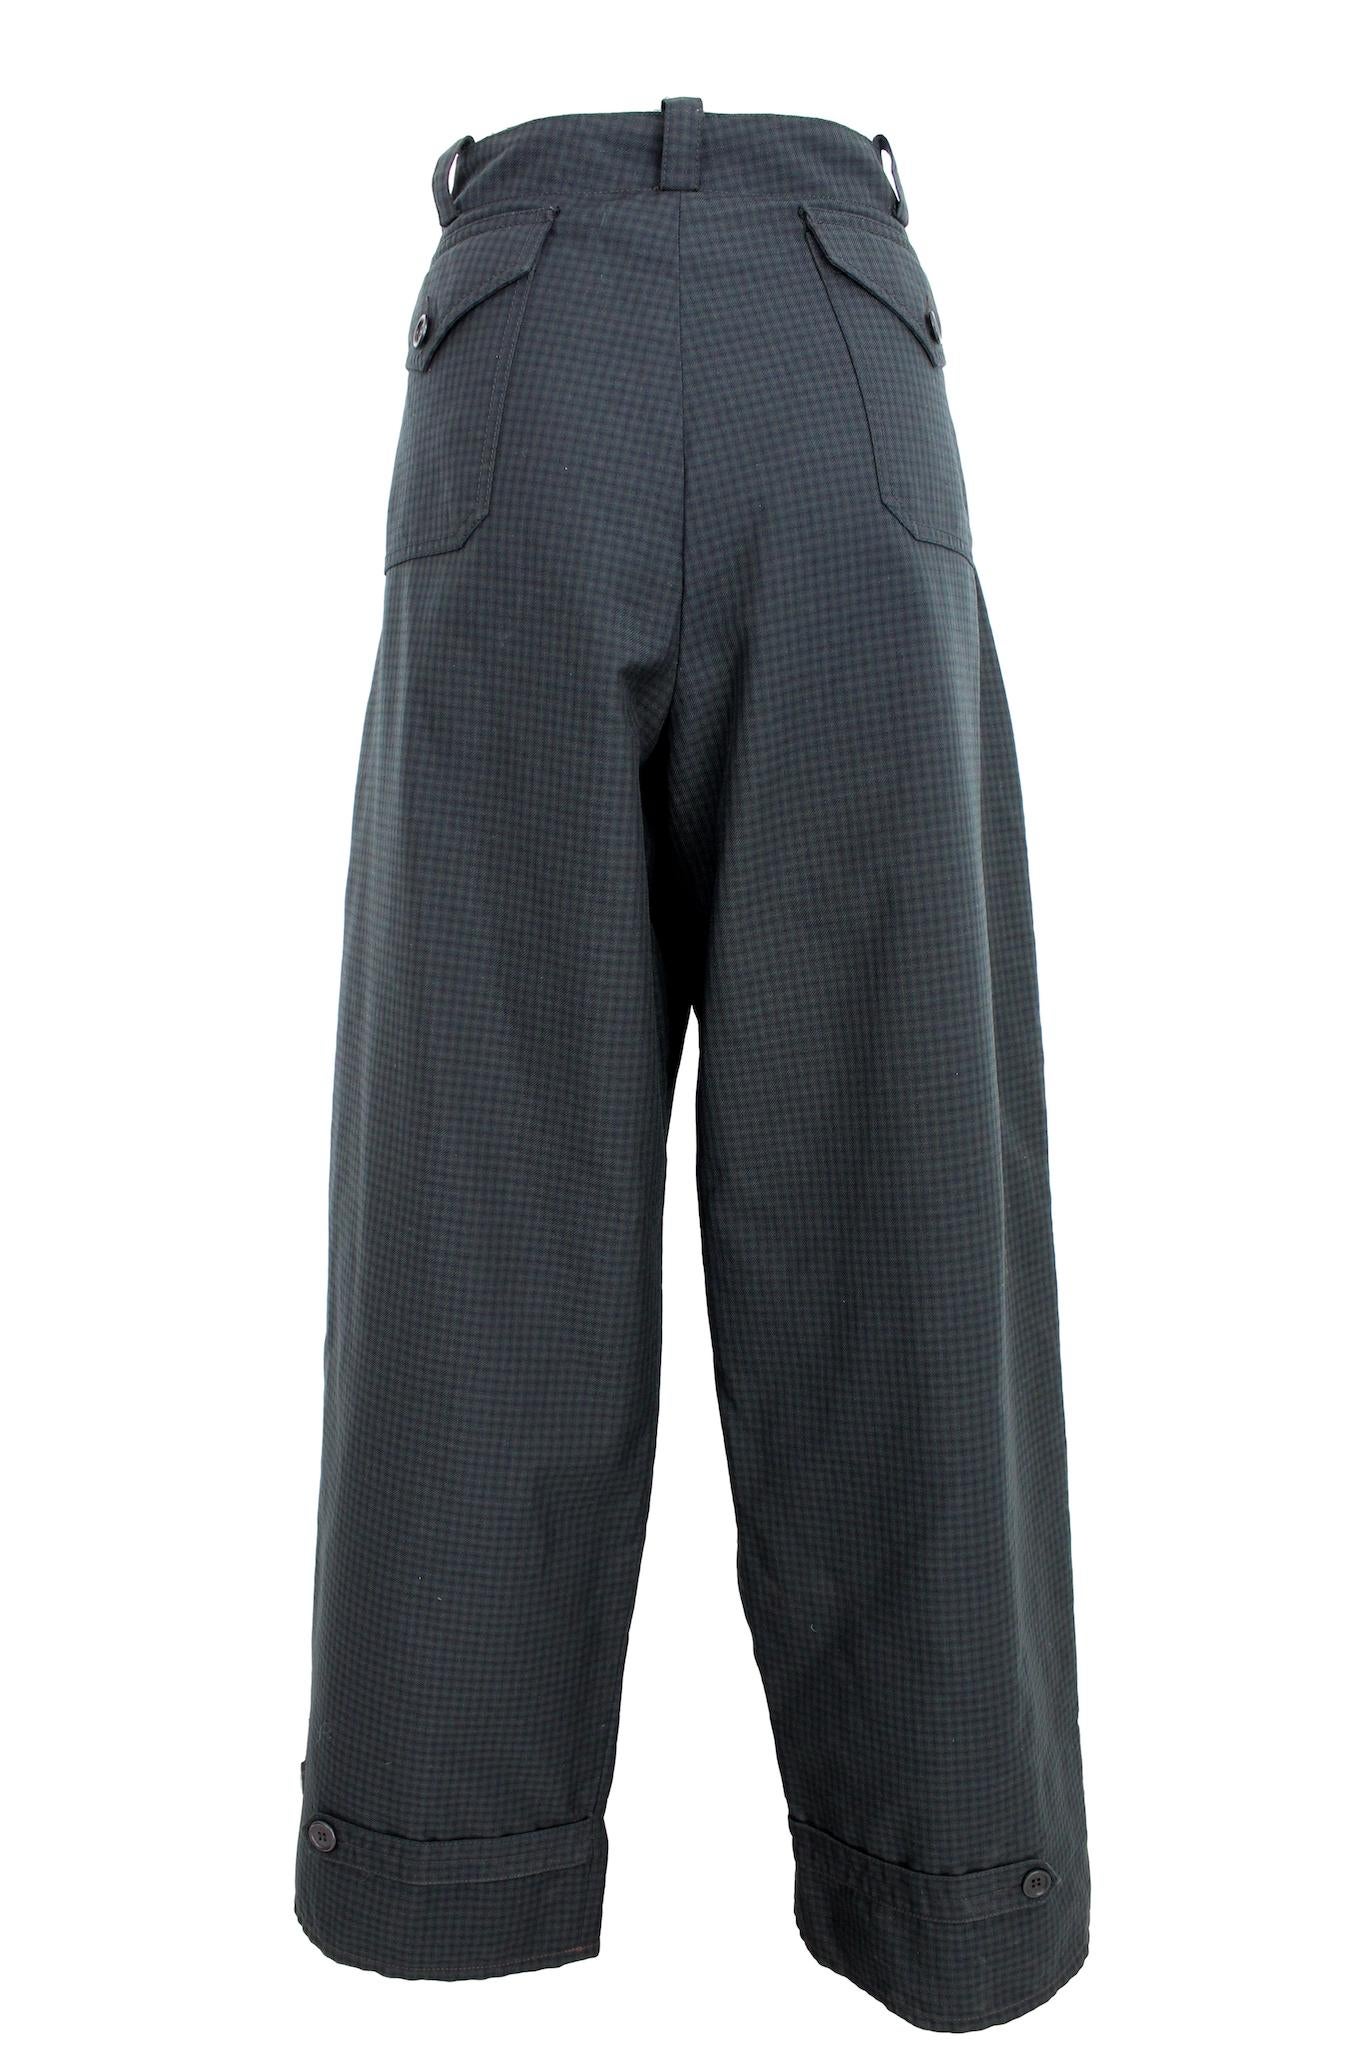 Ce pantalon vintage 90s de Prada est un complément élégant à toute garde-robe. Le pantalon cargo présente une coupe ample, confortable et tendance. Le motif à carreaux vert et gris ajoute une touche de personnalité et de flair à la tenue, tandis que